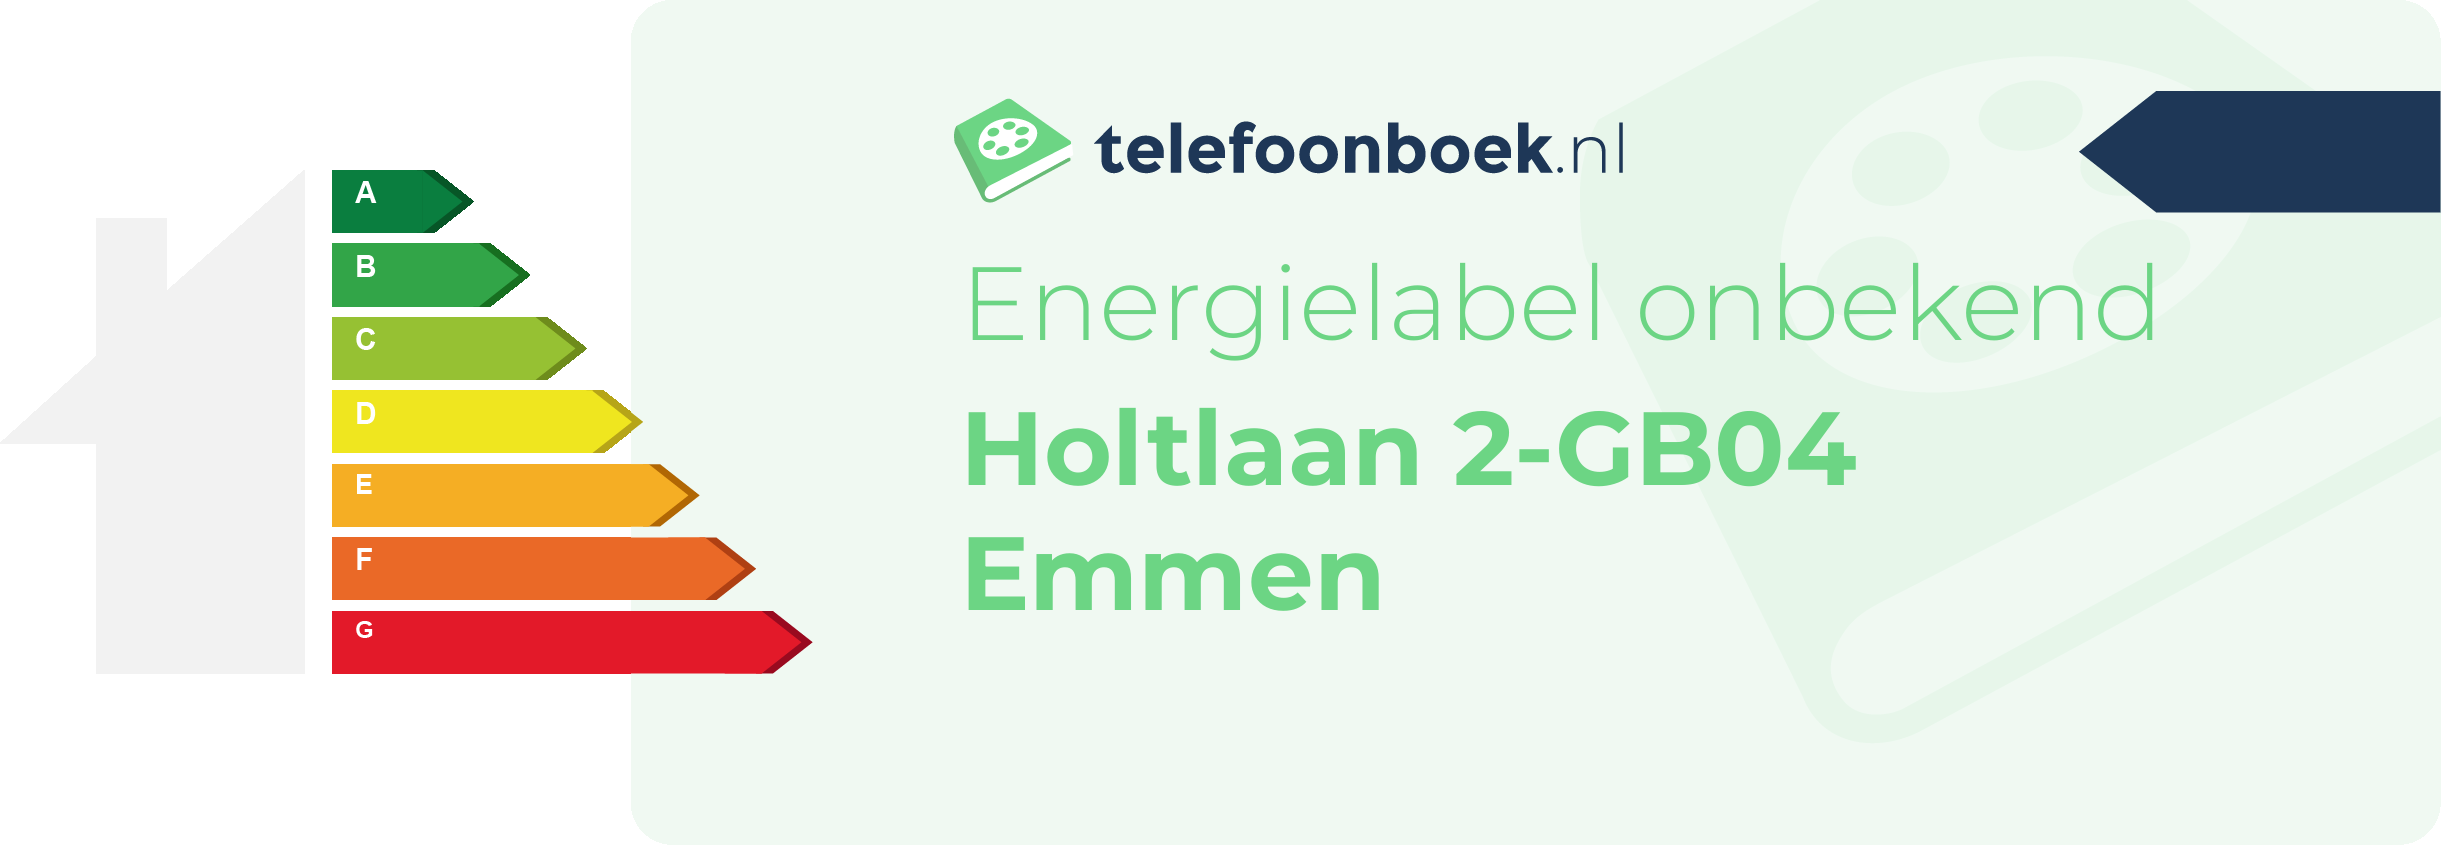 Energielabel Holtlaan 2-GB04 Emmen